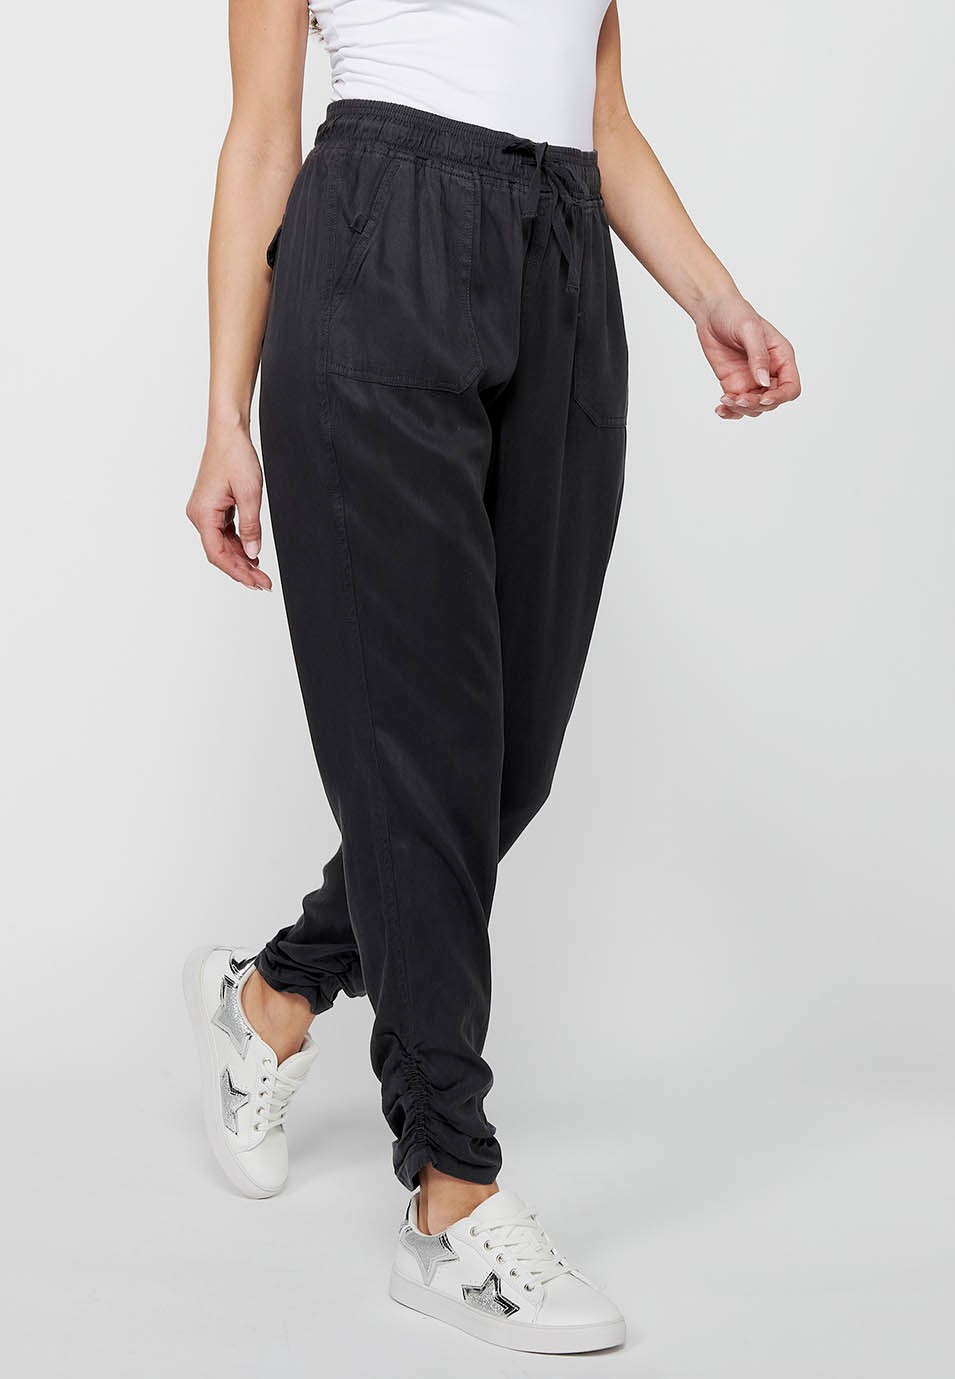 Pantalon de jogging long finition bouclée et taille caoutchoutée avec quatre poches dont deux à l'arrière avec rabat en Noir pour Femme 3